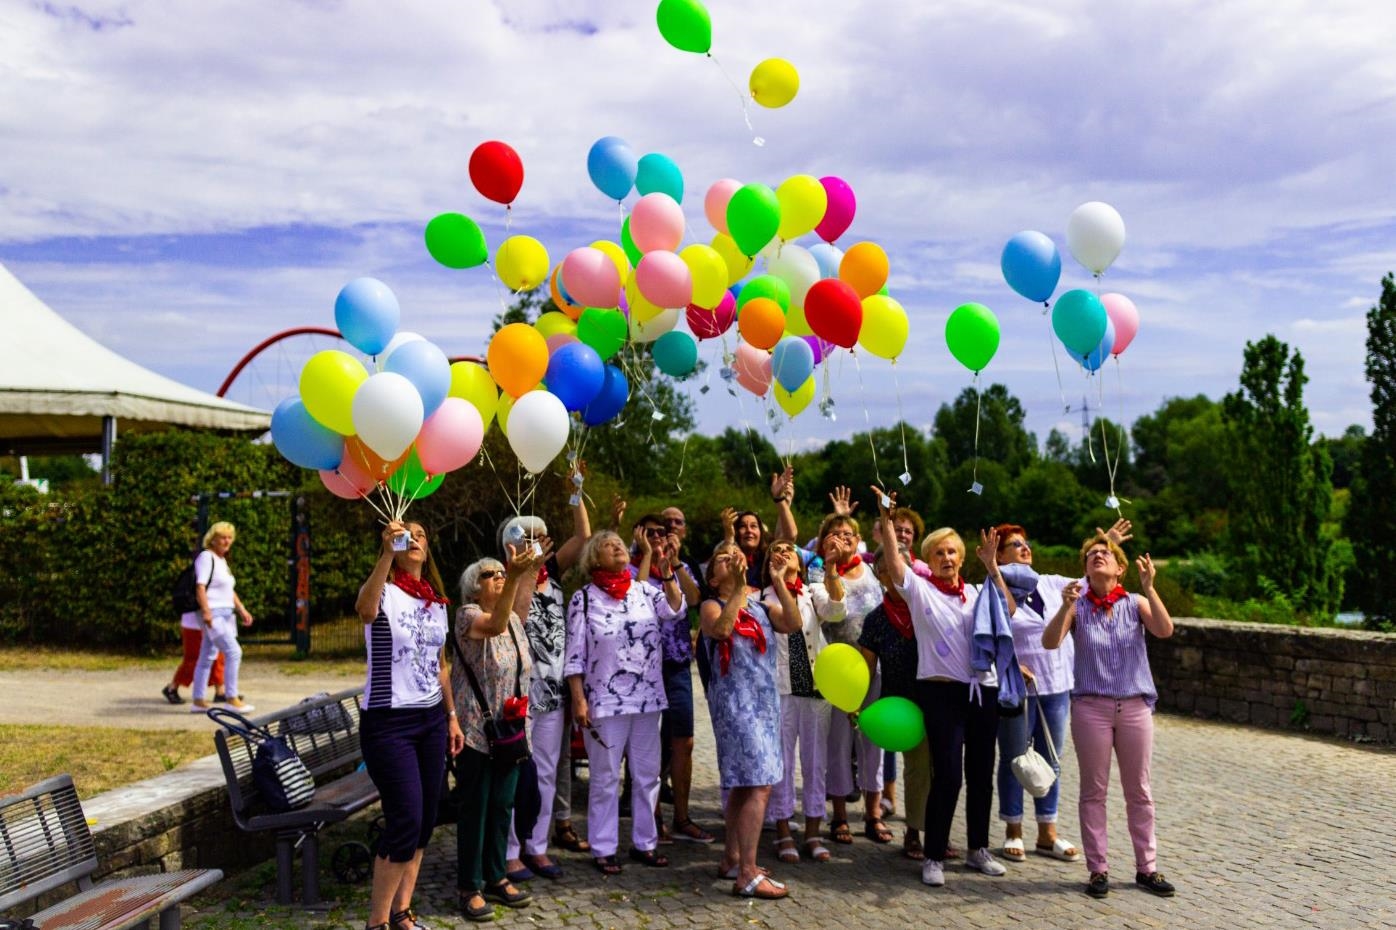 Heliumballons und Menschengruppe in einem Park 